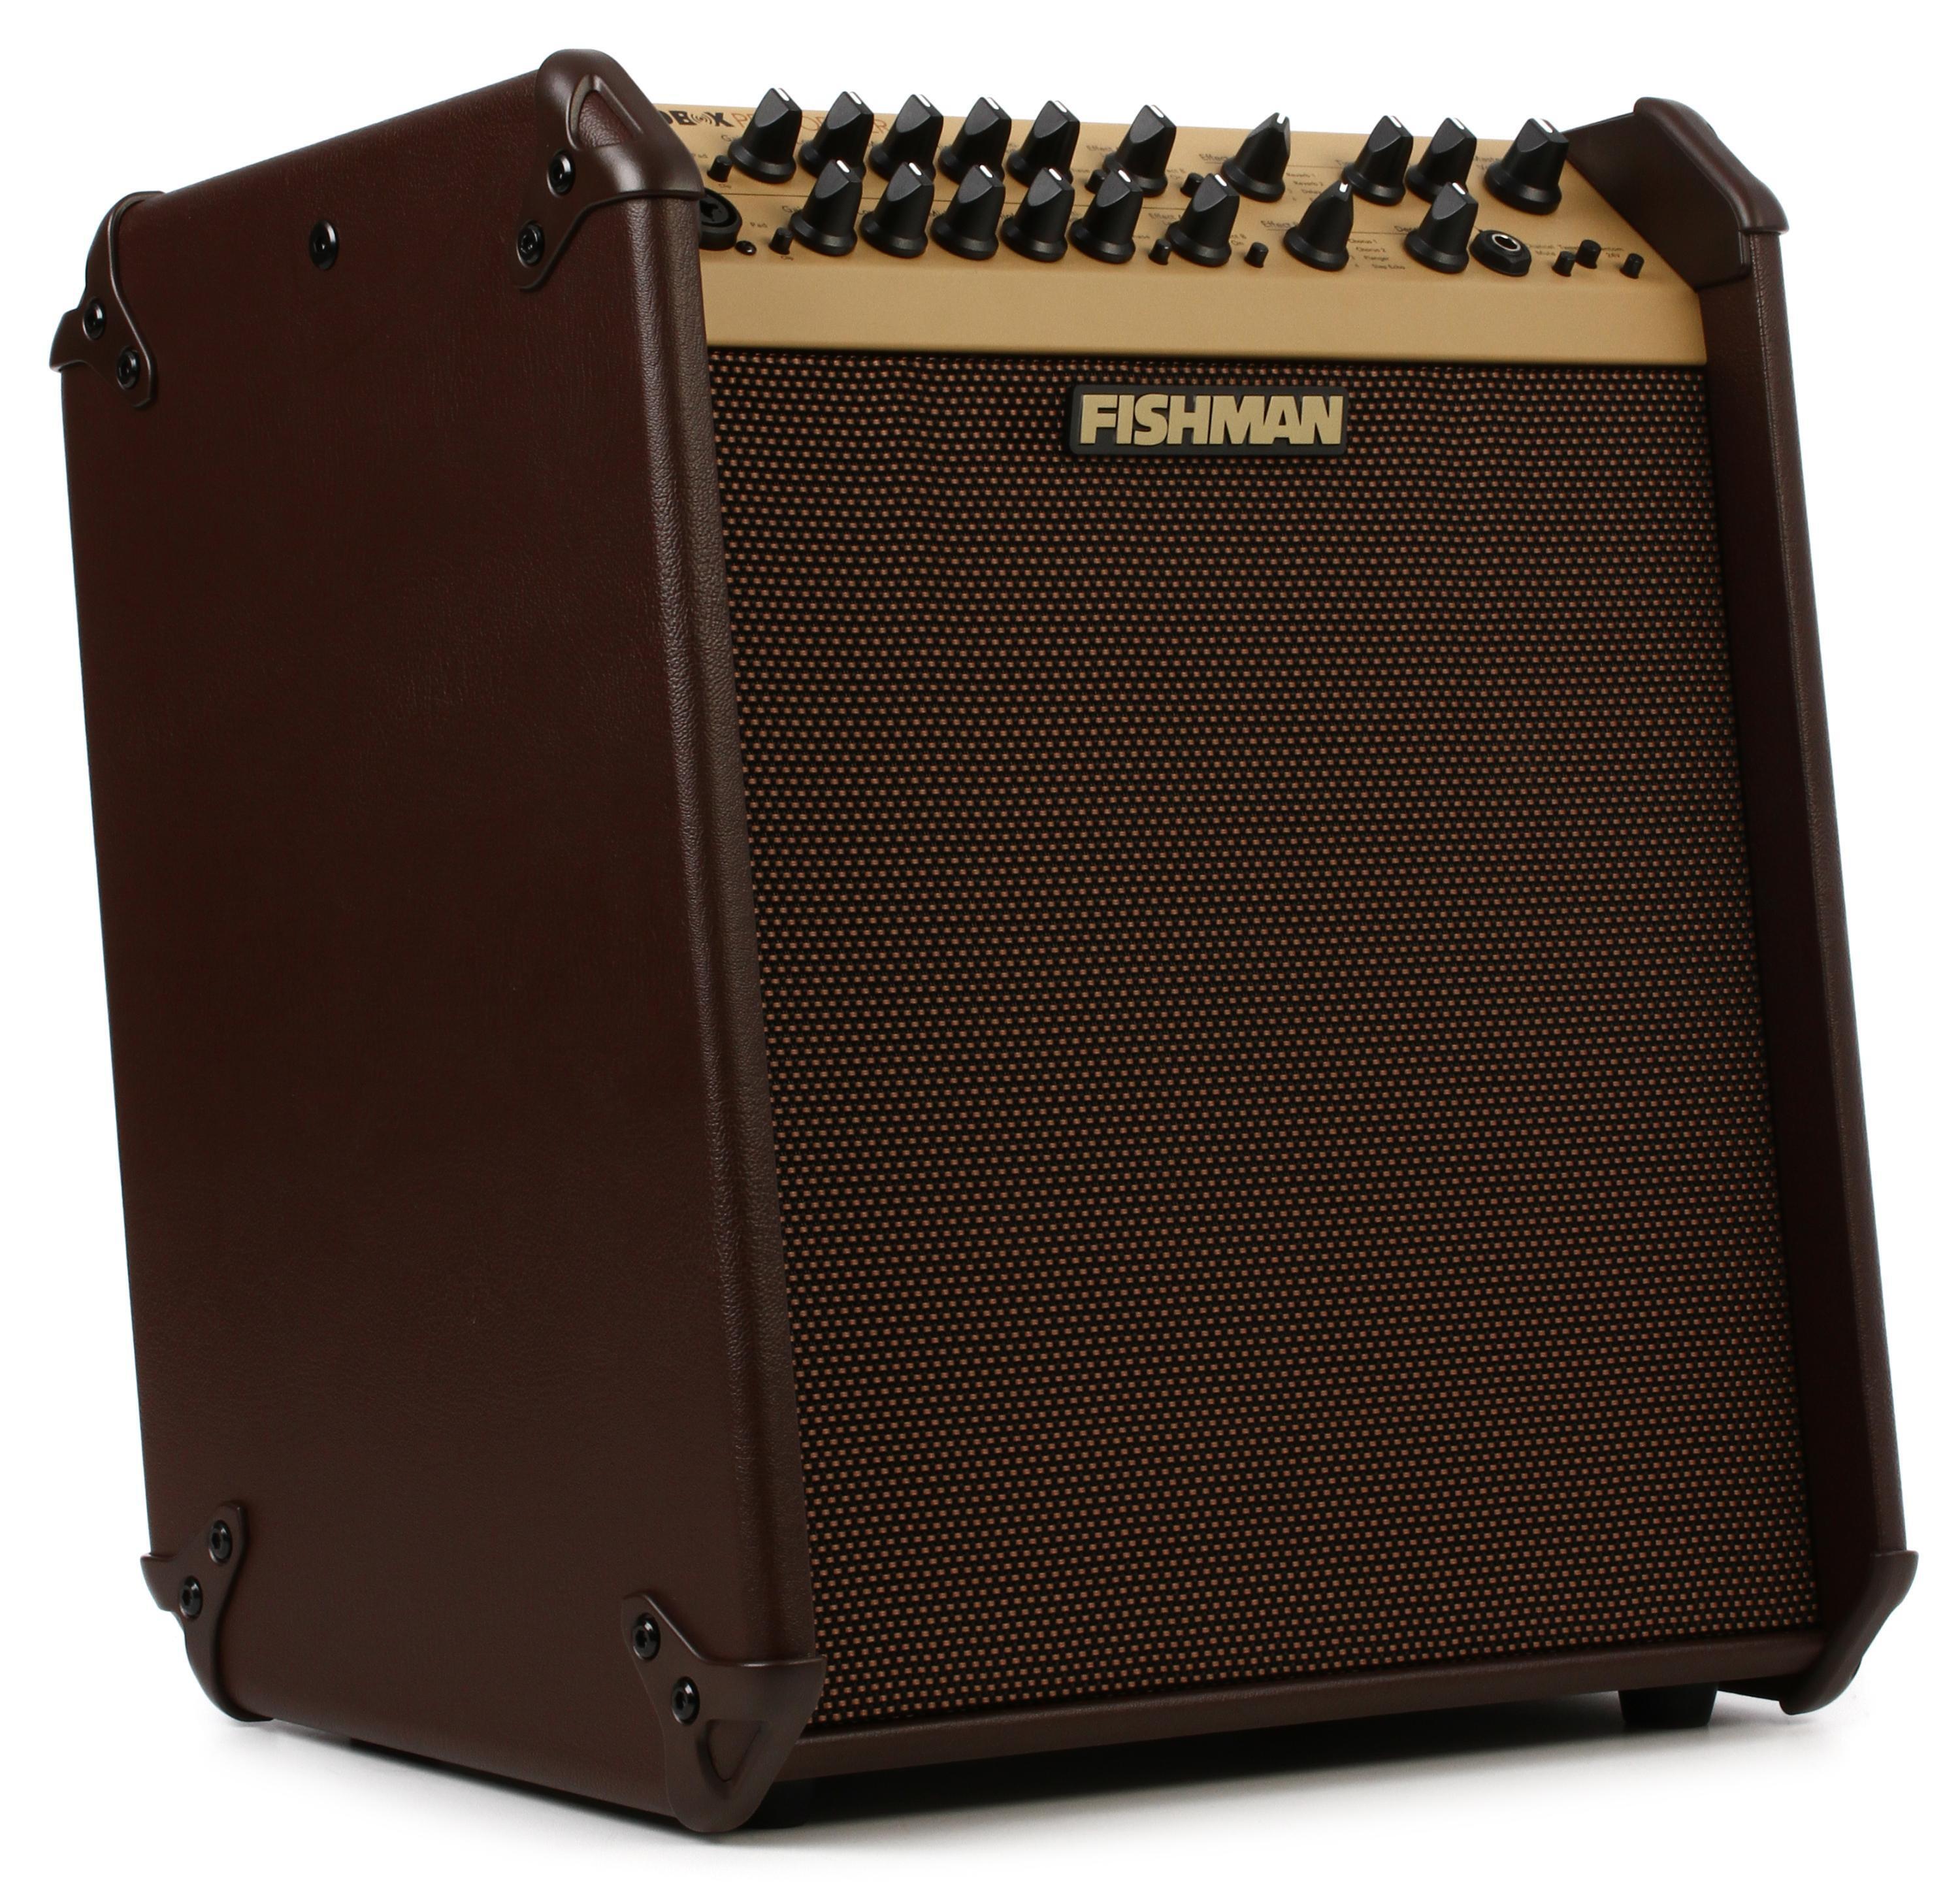 Fishman Loudbox Performer 180-watt 1x5